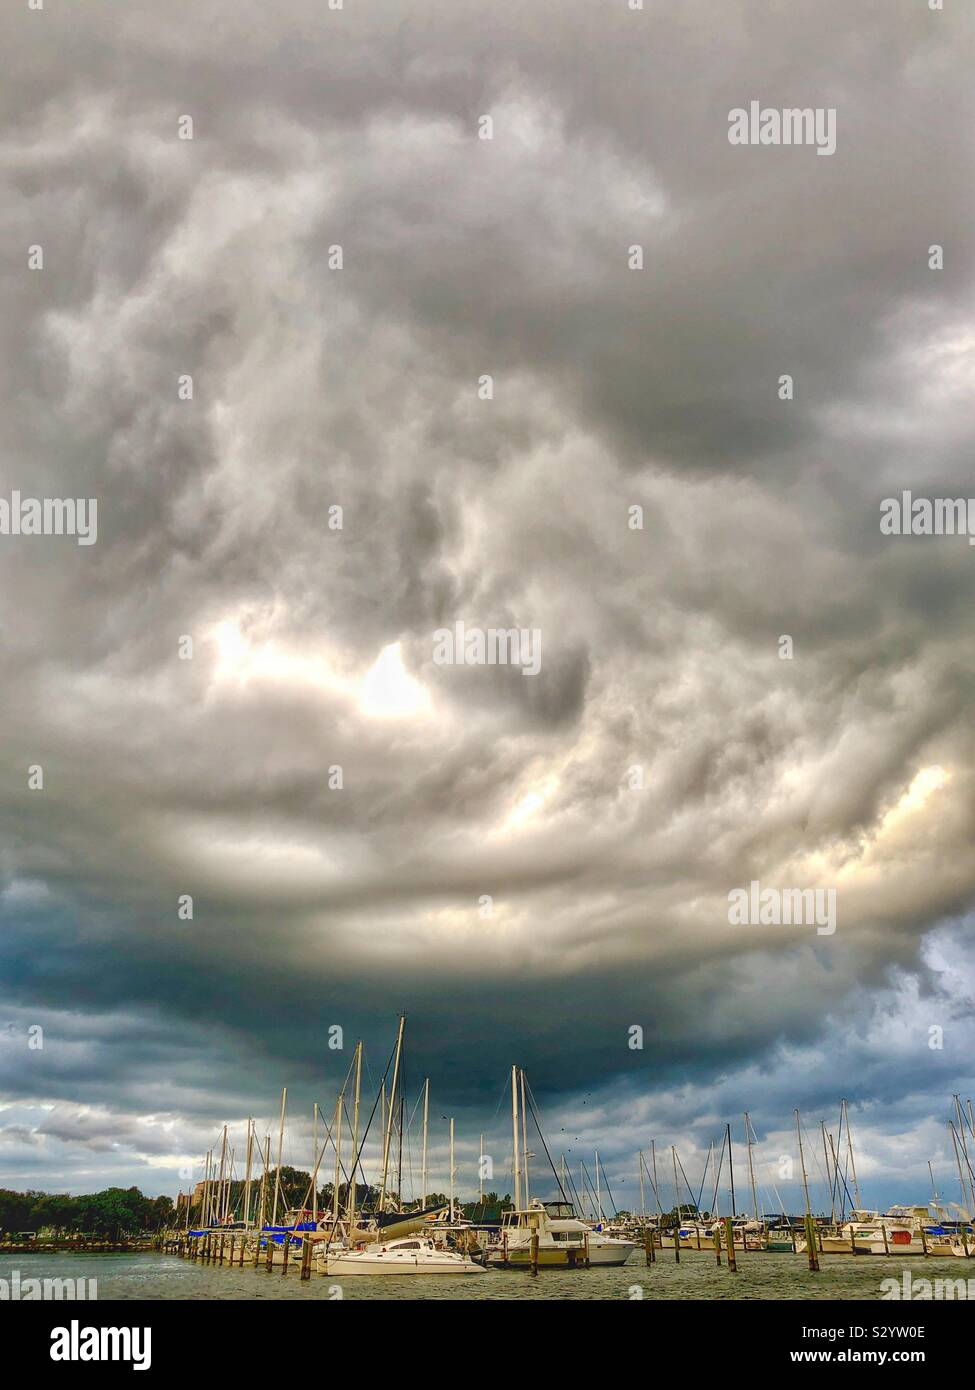 Ominous sky over boat marina Stock Photo